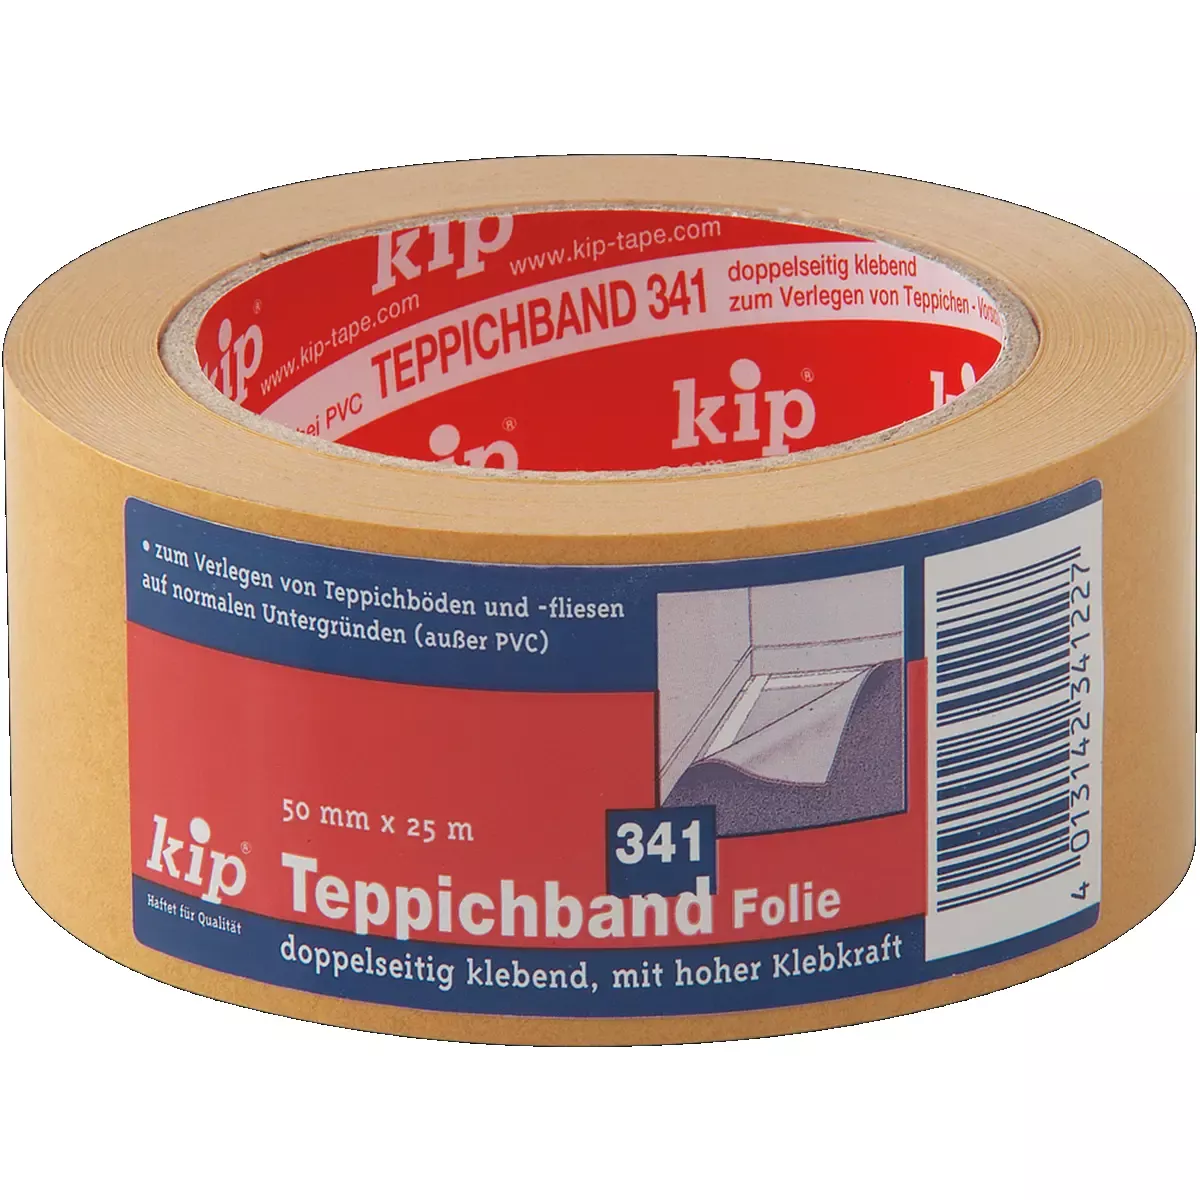 Betriebsmittel Kip Folien-Teppichband 50 mm x25 m, 341-22 für Betriebsbedarf